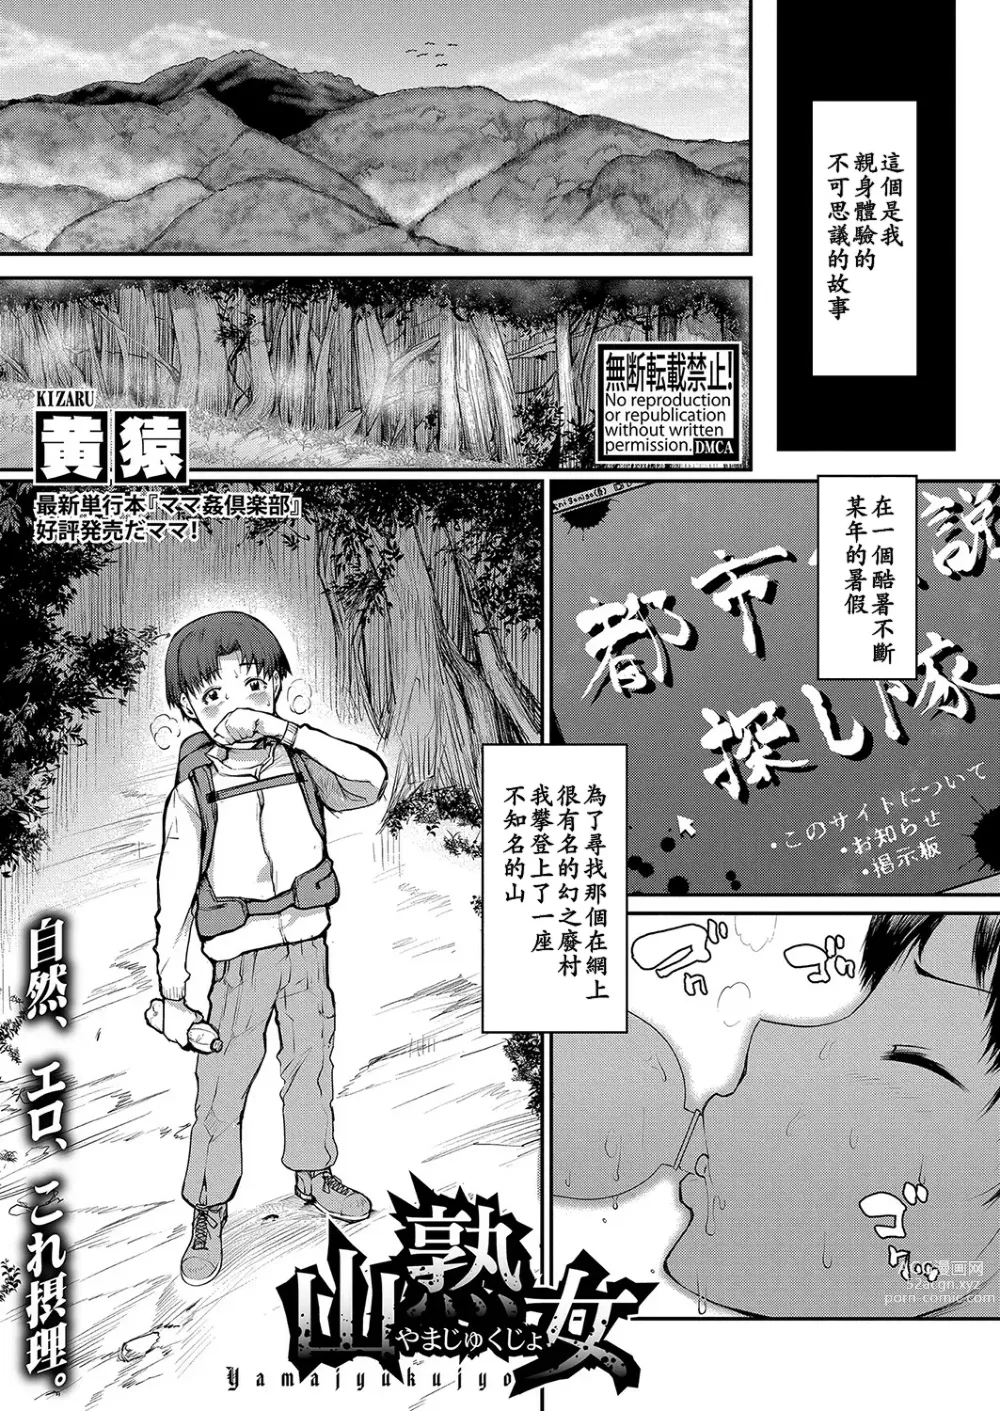 Page 1 of manga Yamajyukujyo